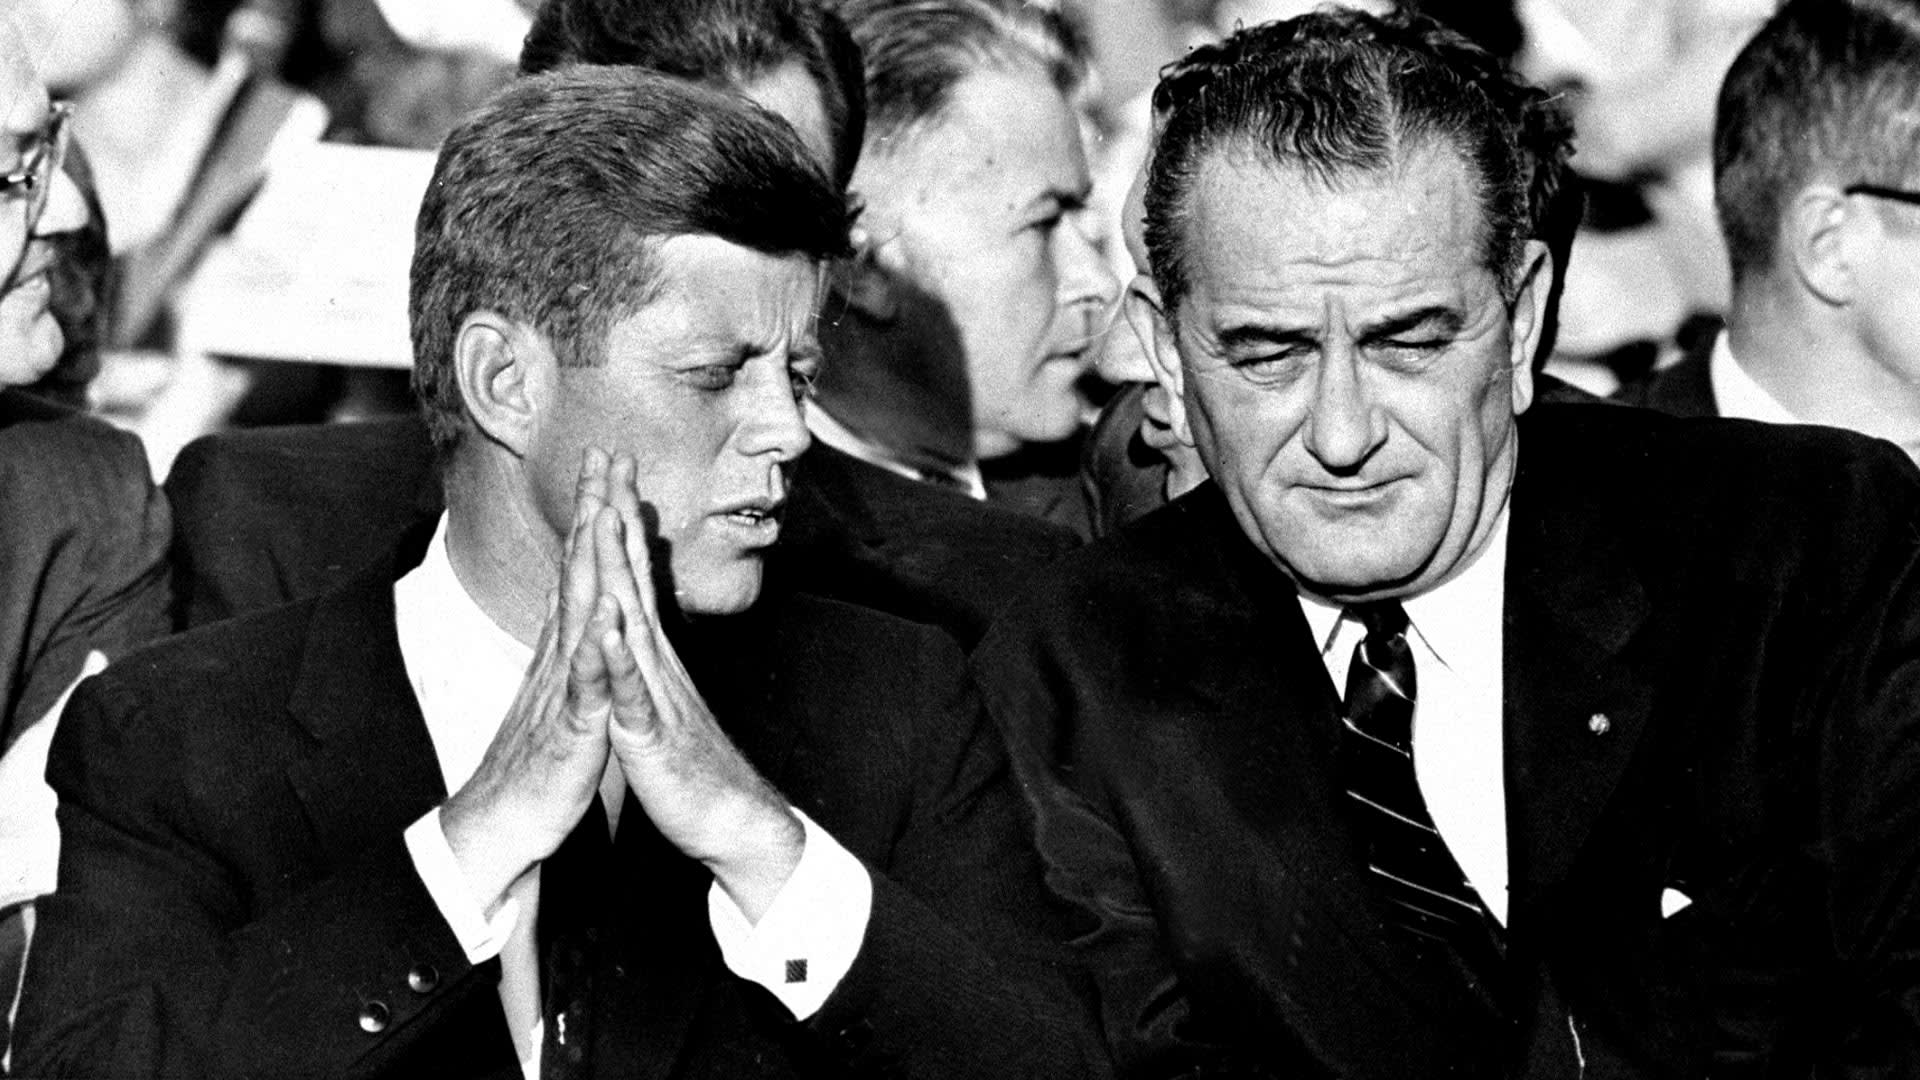 Nástupce JFK Lyndon B. Johnson měl být sestřelen v boji s Japonskem